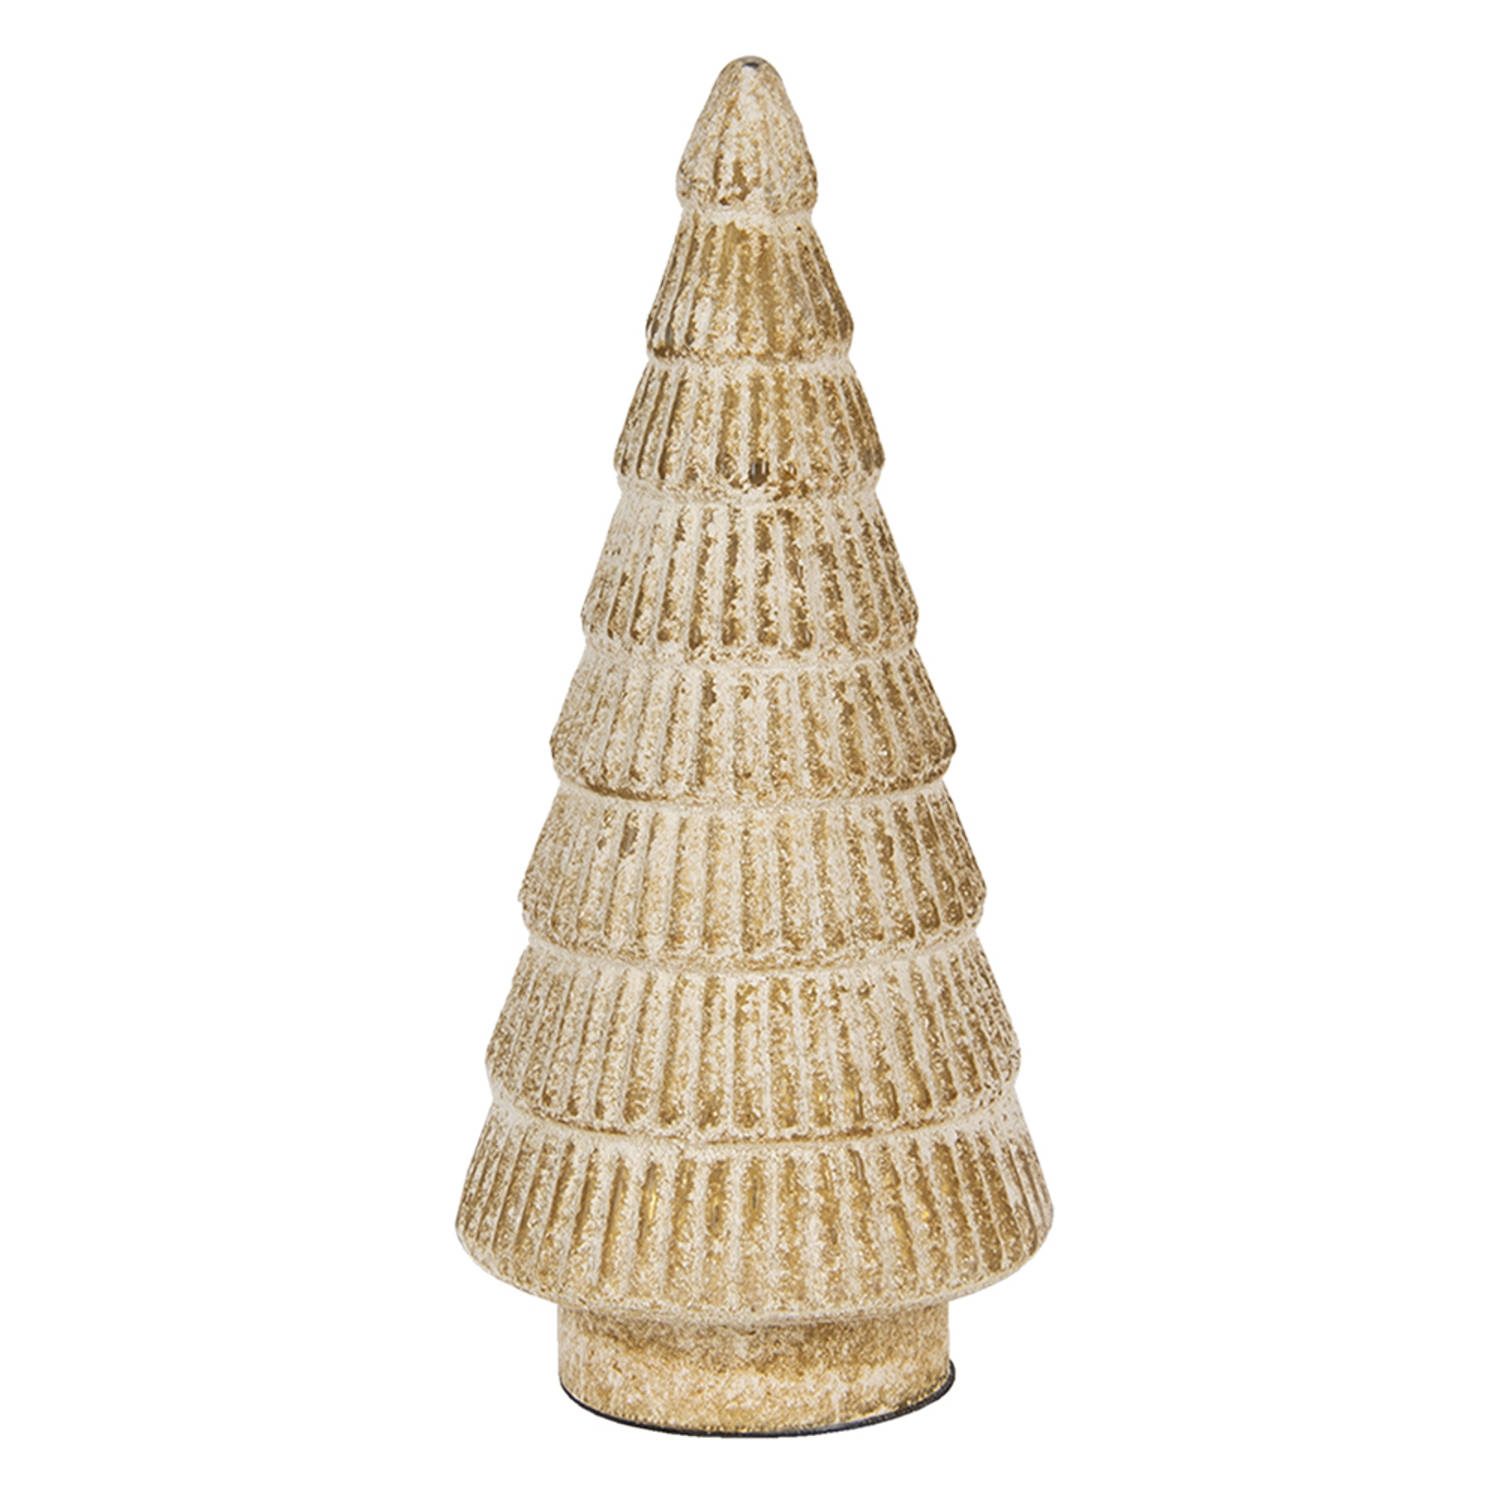 HAES DECO - Decoratieve Kerstboom - Formaat Ø 15x31 cm - Kleur Goudkleurig - Materiaal Glas - Kerstversiering, Kerstdecoratie